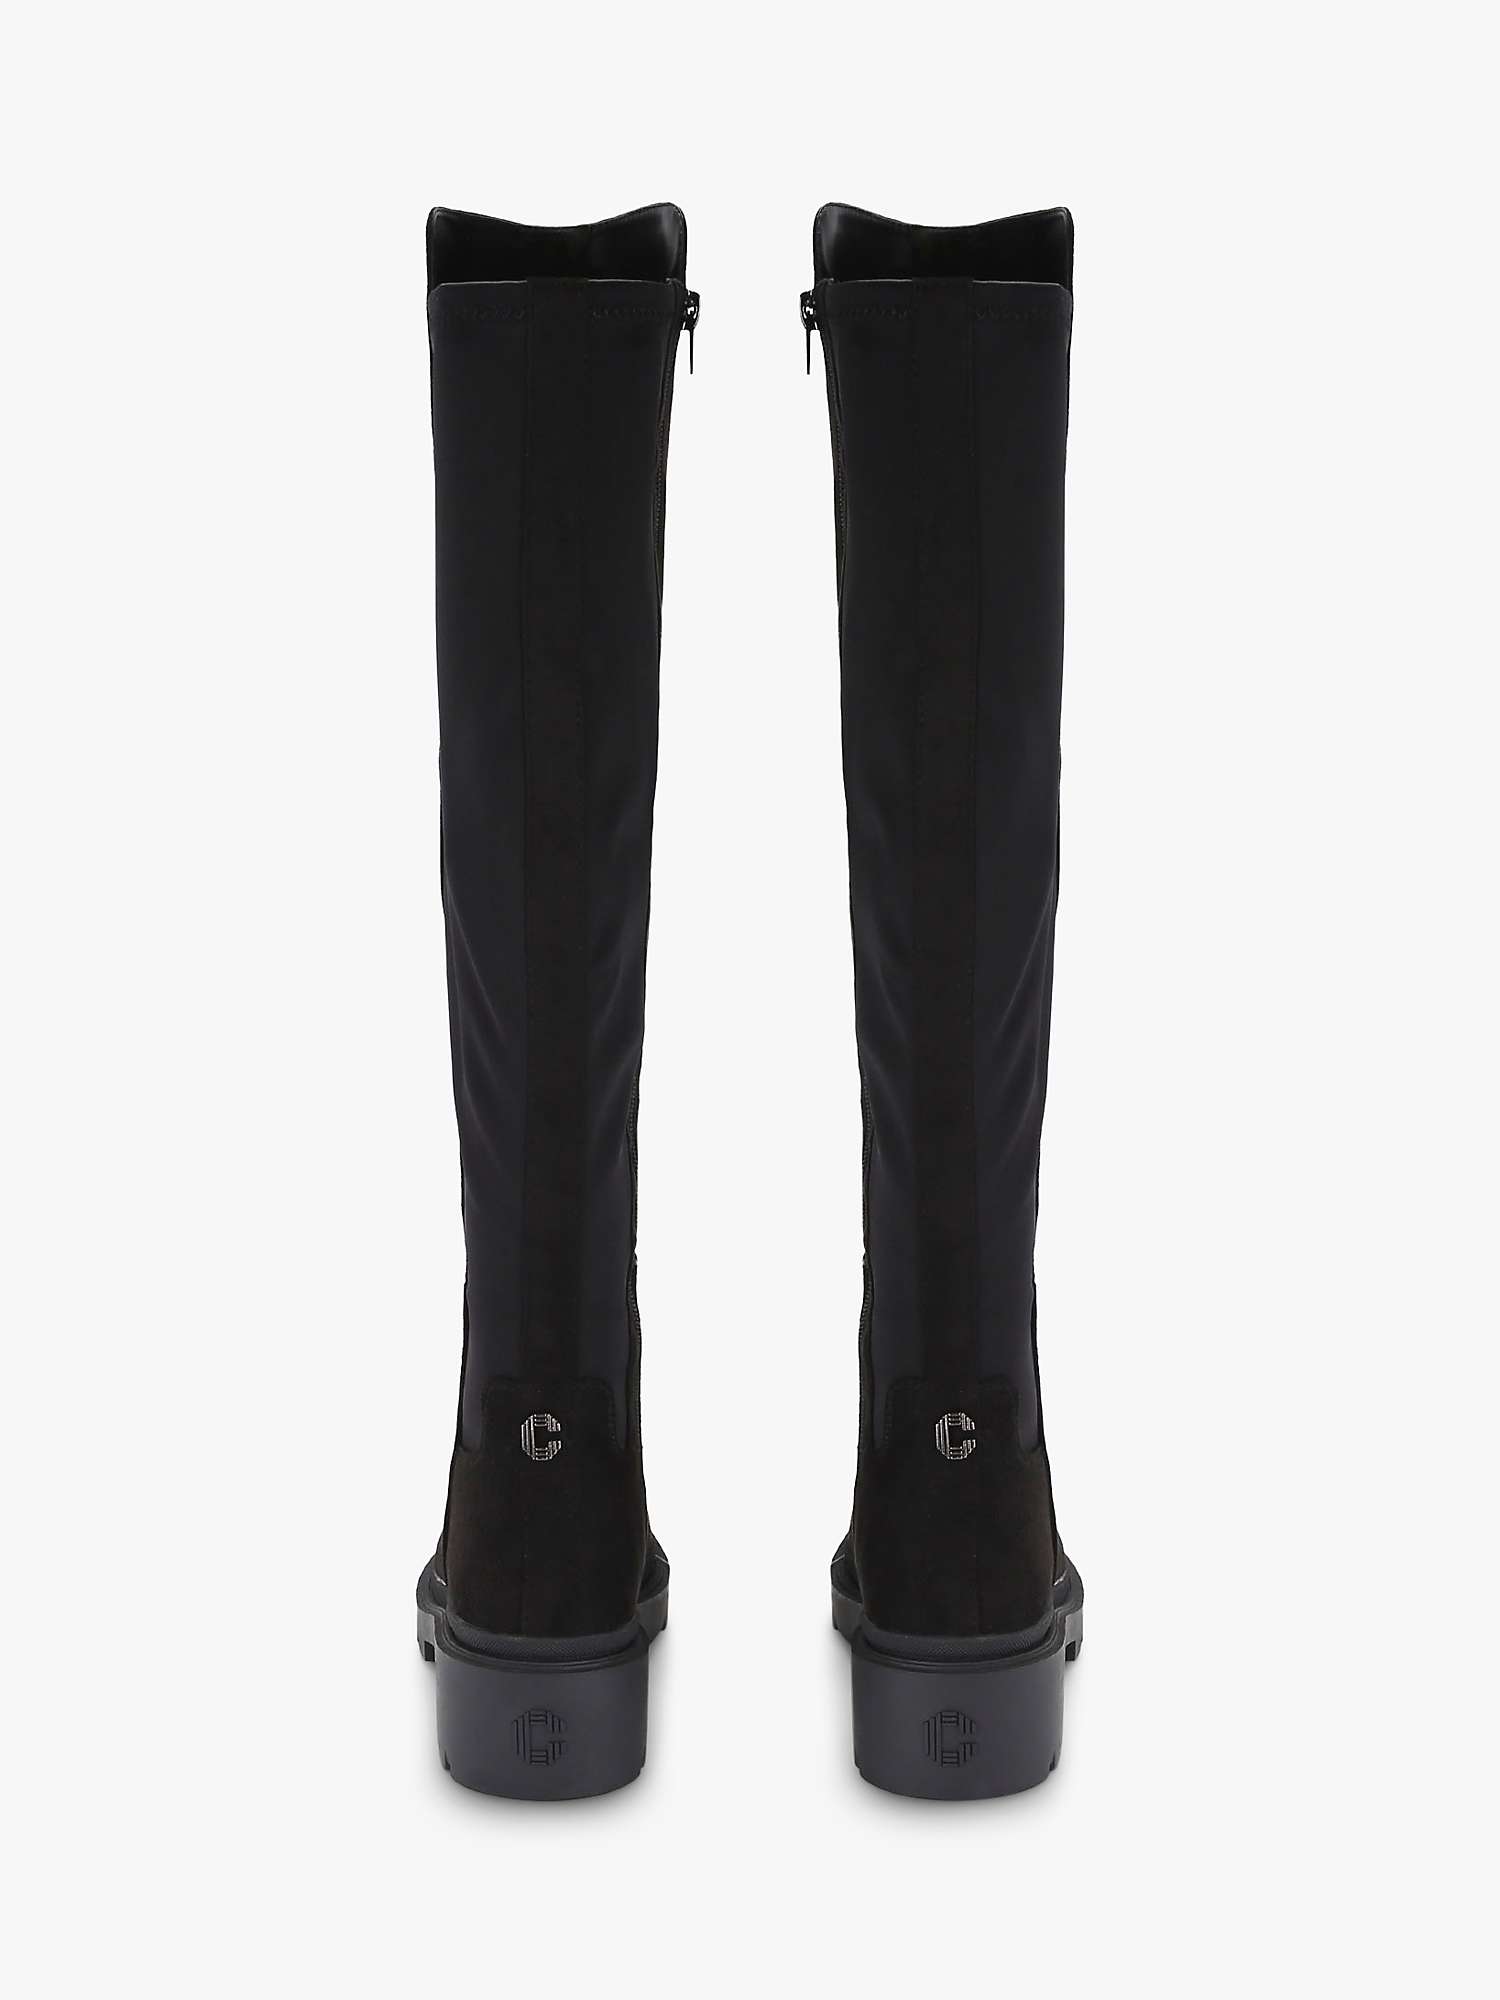 Buy Carvela Dash Knee High Boots, Black Online at johnlewis.com